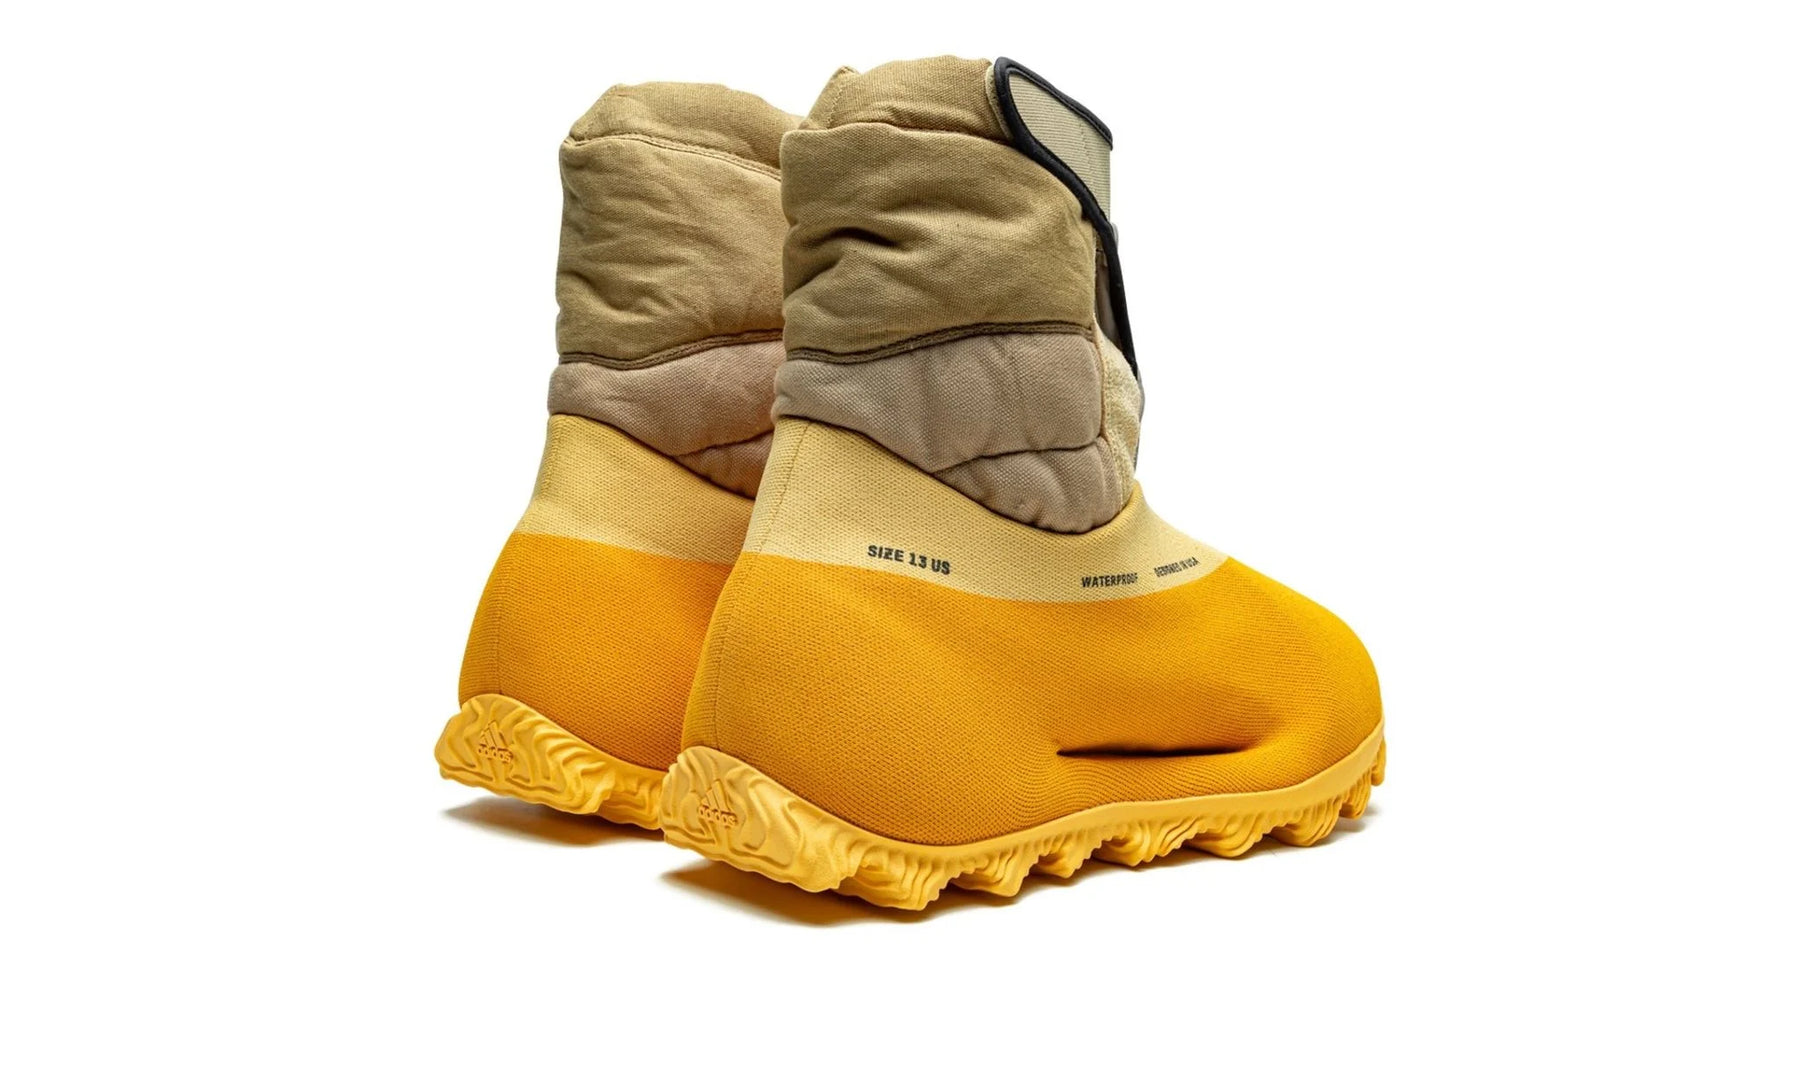 Yeezy Knit Runner Boot "Sulfur"